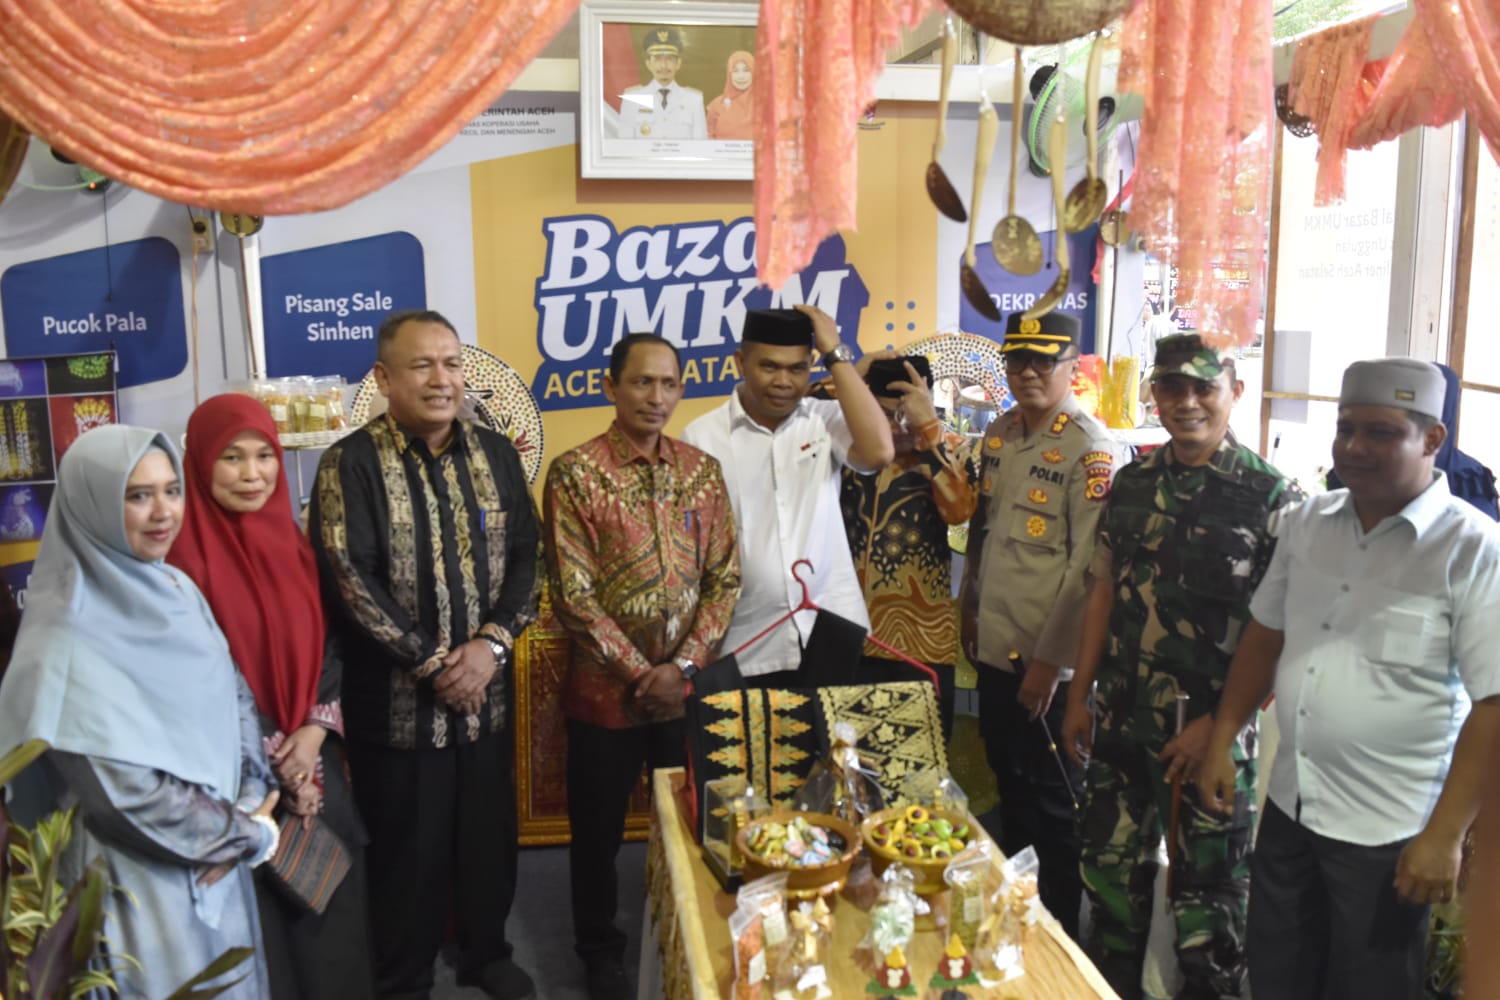 Bazar Produk Unggulan dan Kuliner UMKM Aceh Selatan, Hadirkan Produk Makanan hingga Hasil Kerajinan